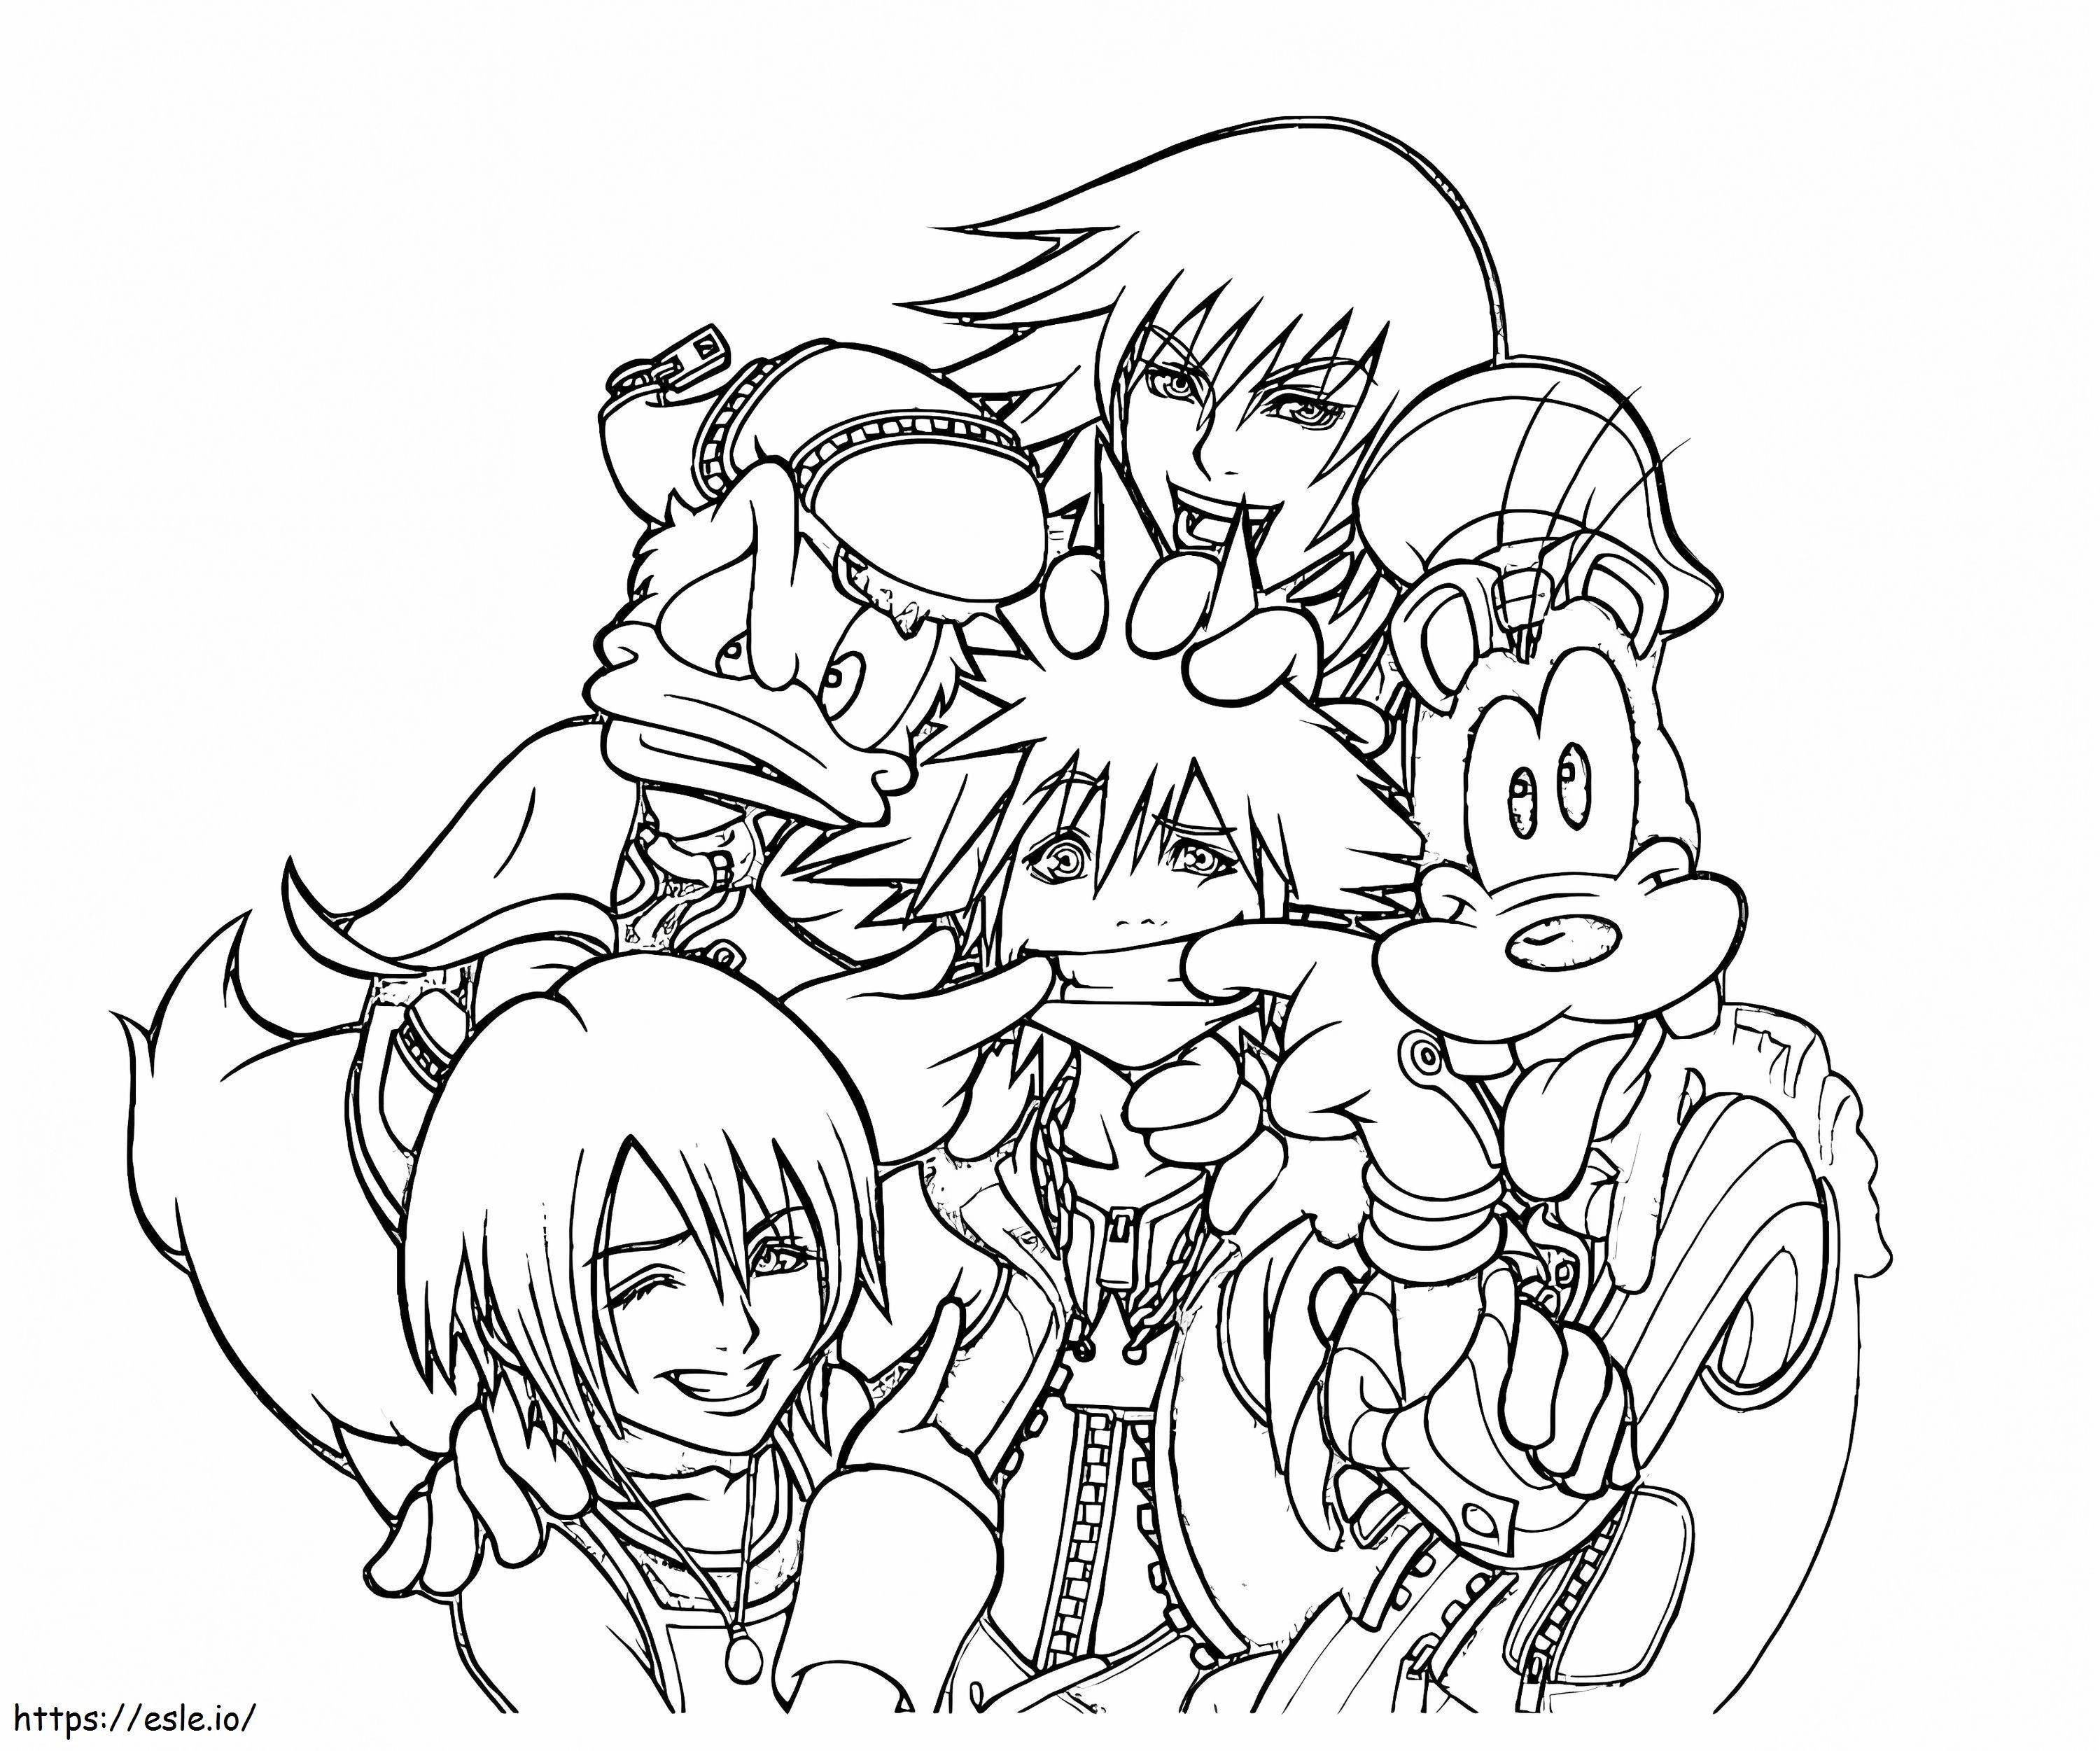 Personagens engraçados de Kingdom Hearts para colorir